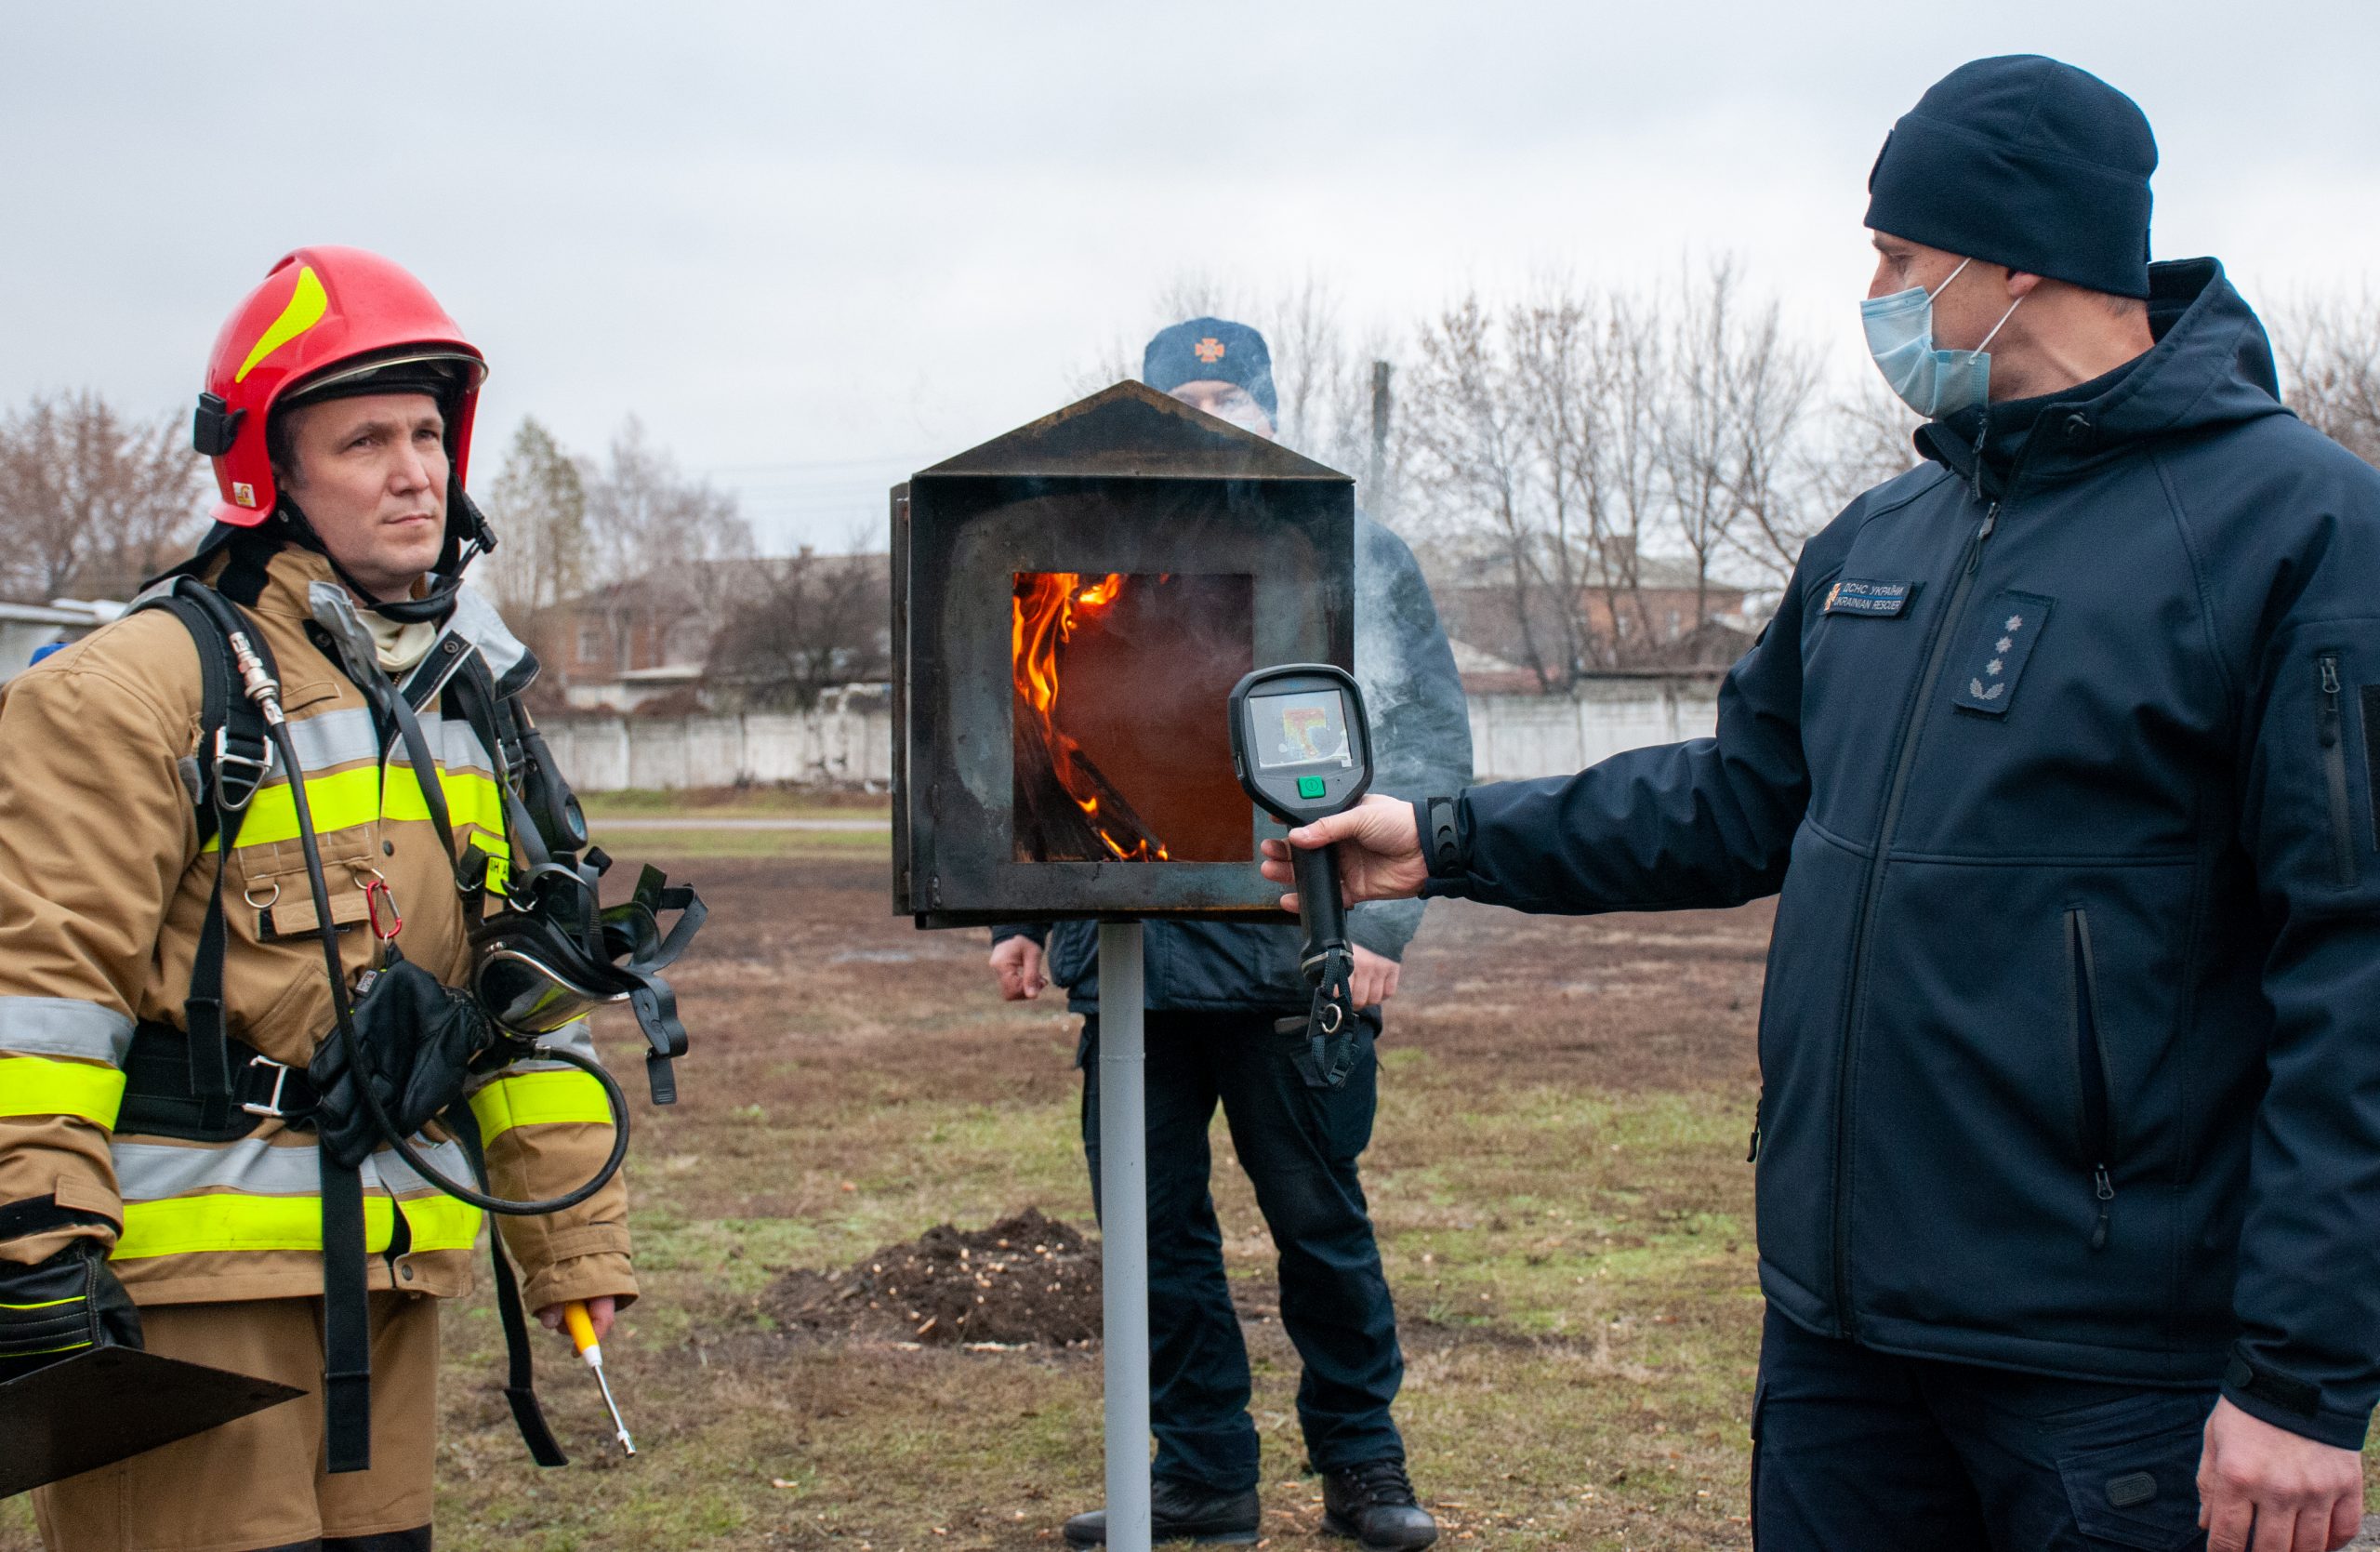 Будущие спасатели Харькова будут тренироваться в условиях, максимально приближенным к реальным